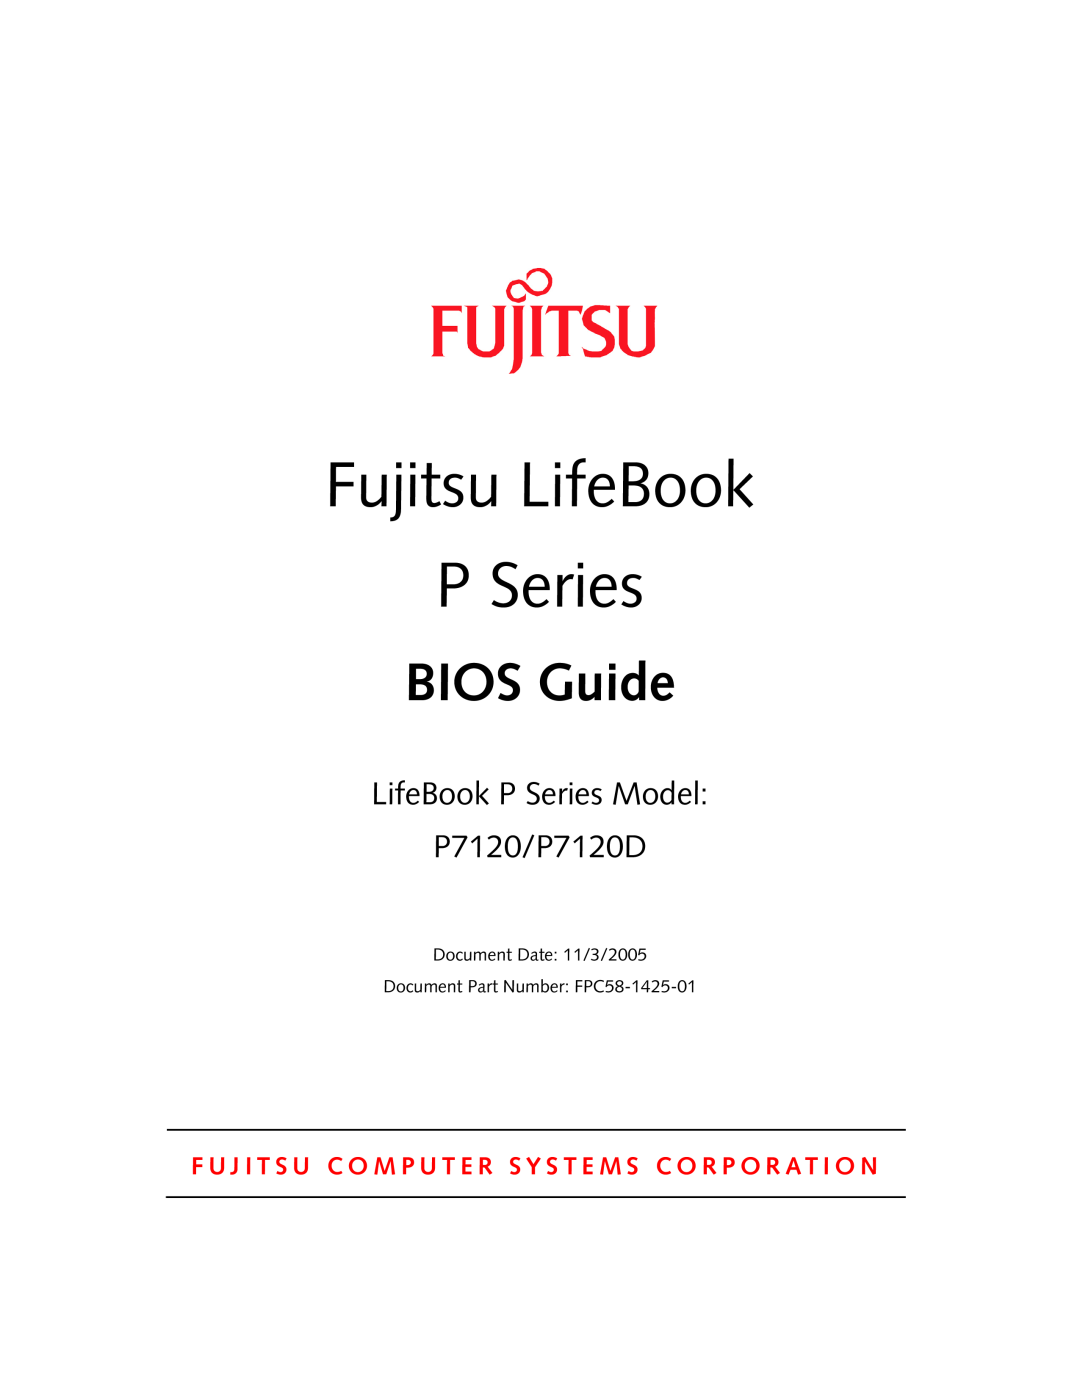 Fujitsu manual Fujitsu LifeBook, BIOS Guide, LifeBook P Series Model P7120/P7120D 